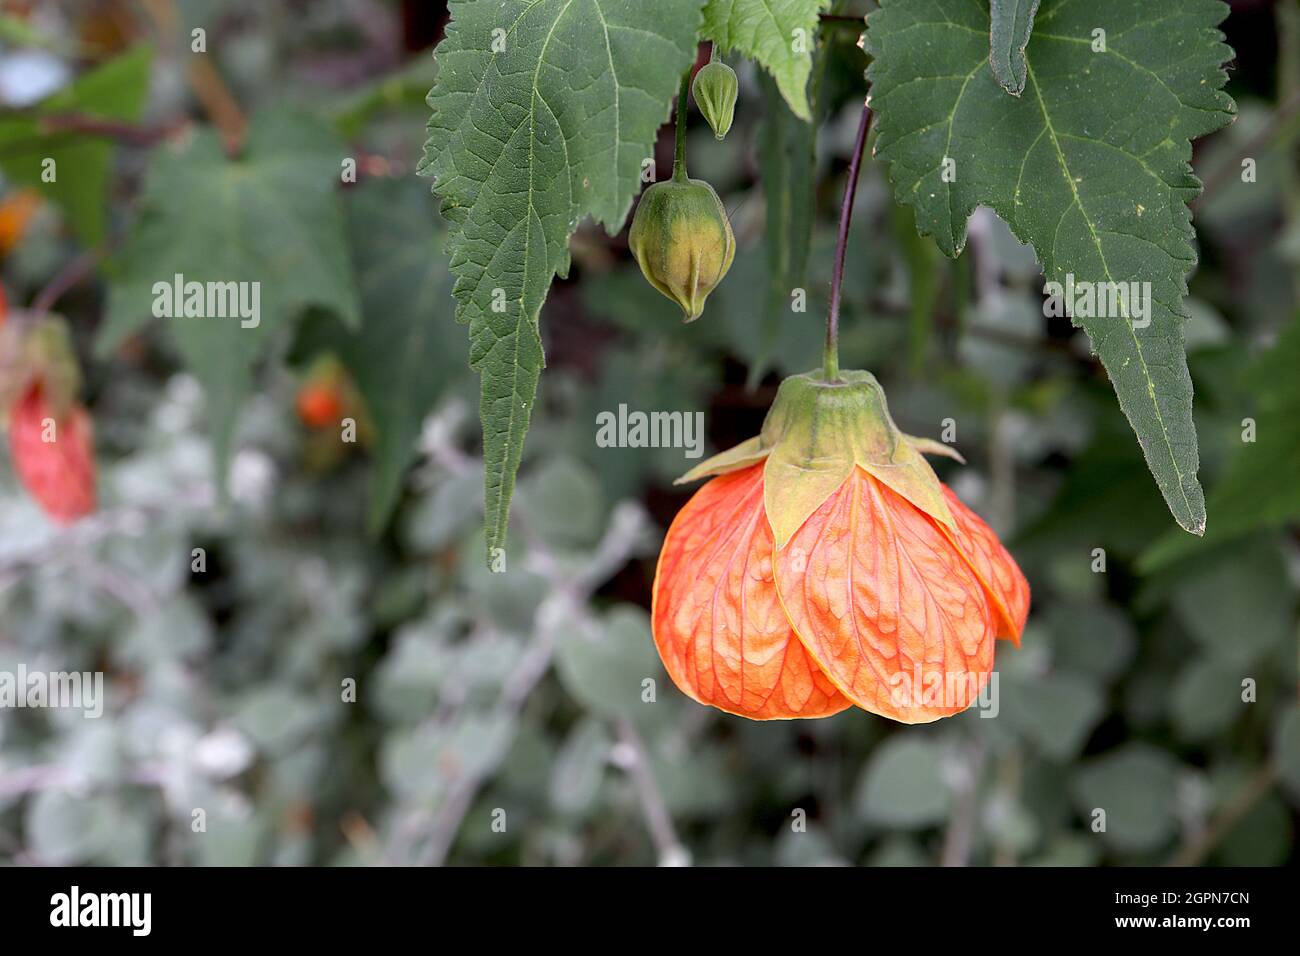 Abutilon ‘Giant Orange’ Chinese lantern Giant Orange – deep orange large bell-shaped flowers with red veins, maple-like leaves,  September, England,UK Stock Photo